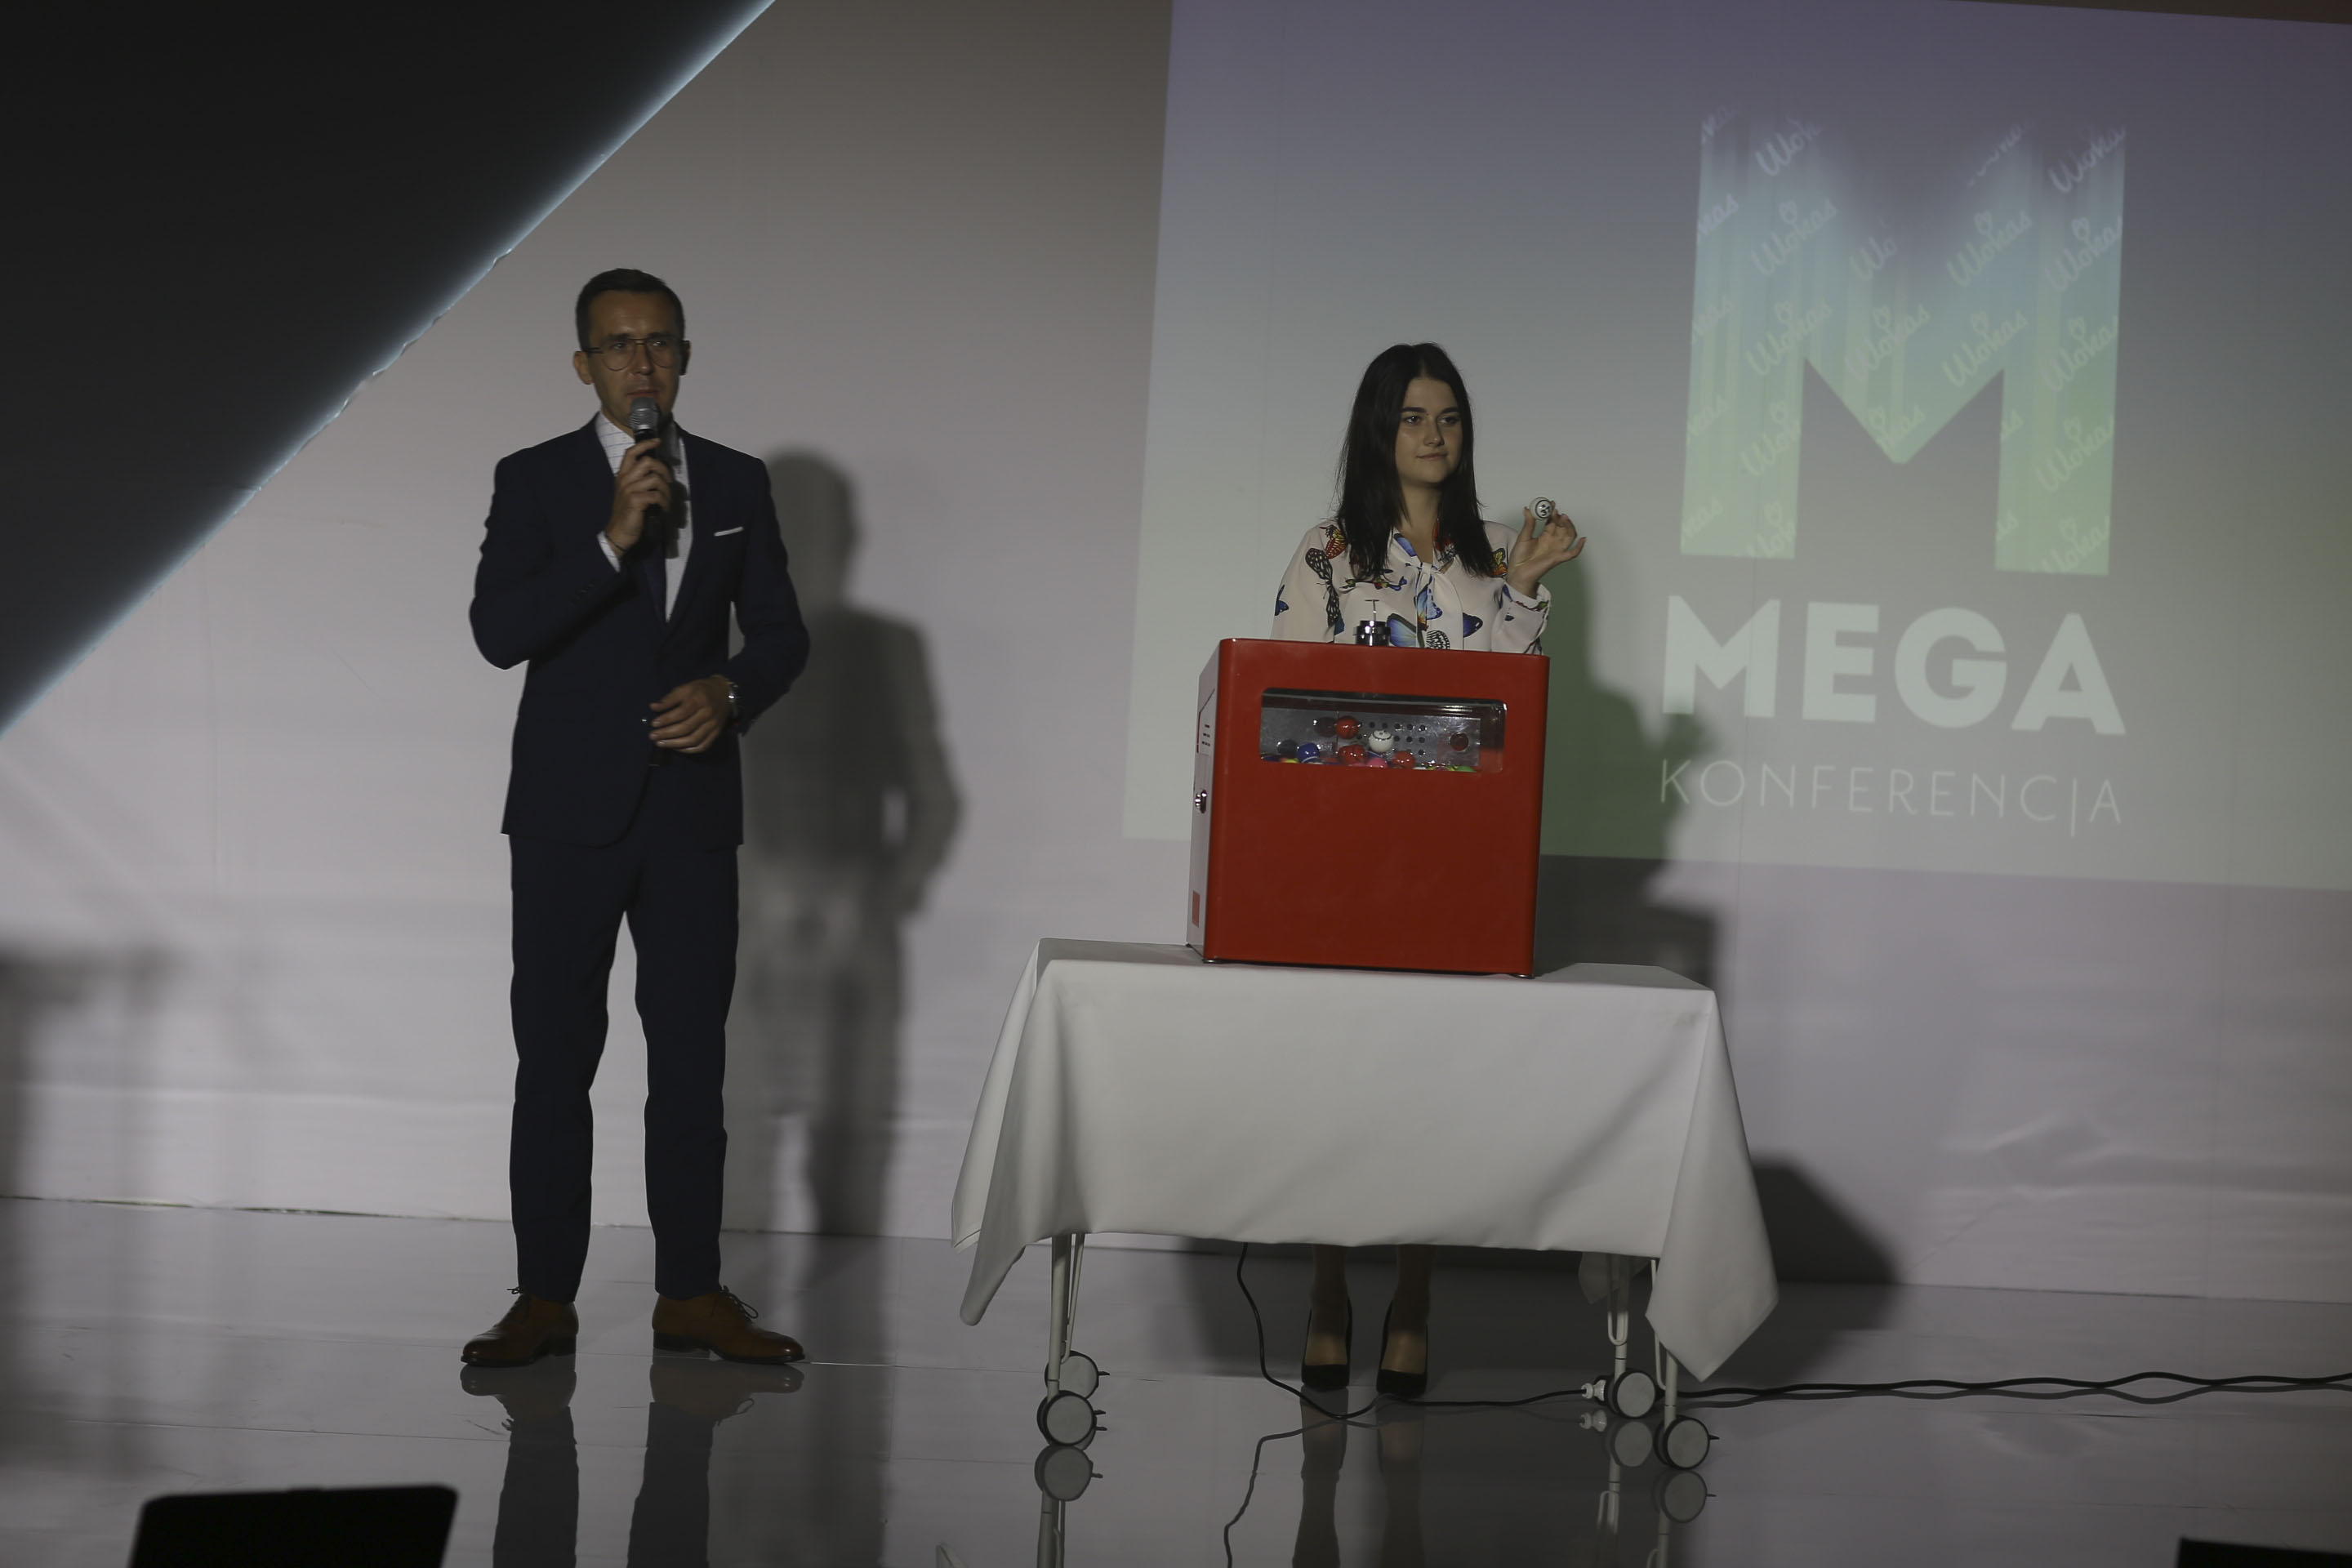 Wokas, Mega Konferencja, 2018, bingo